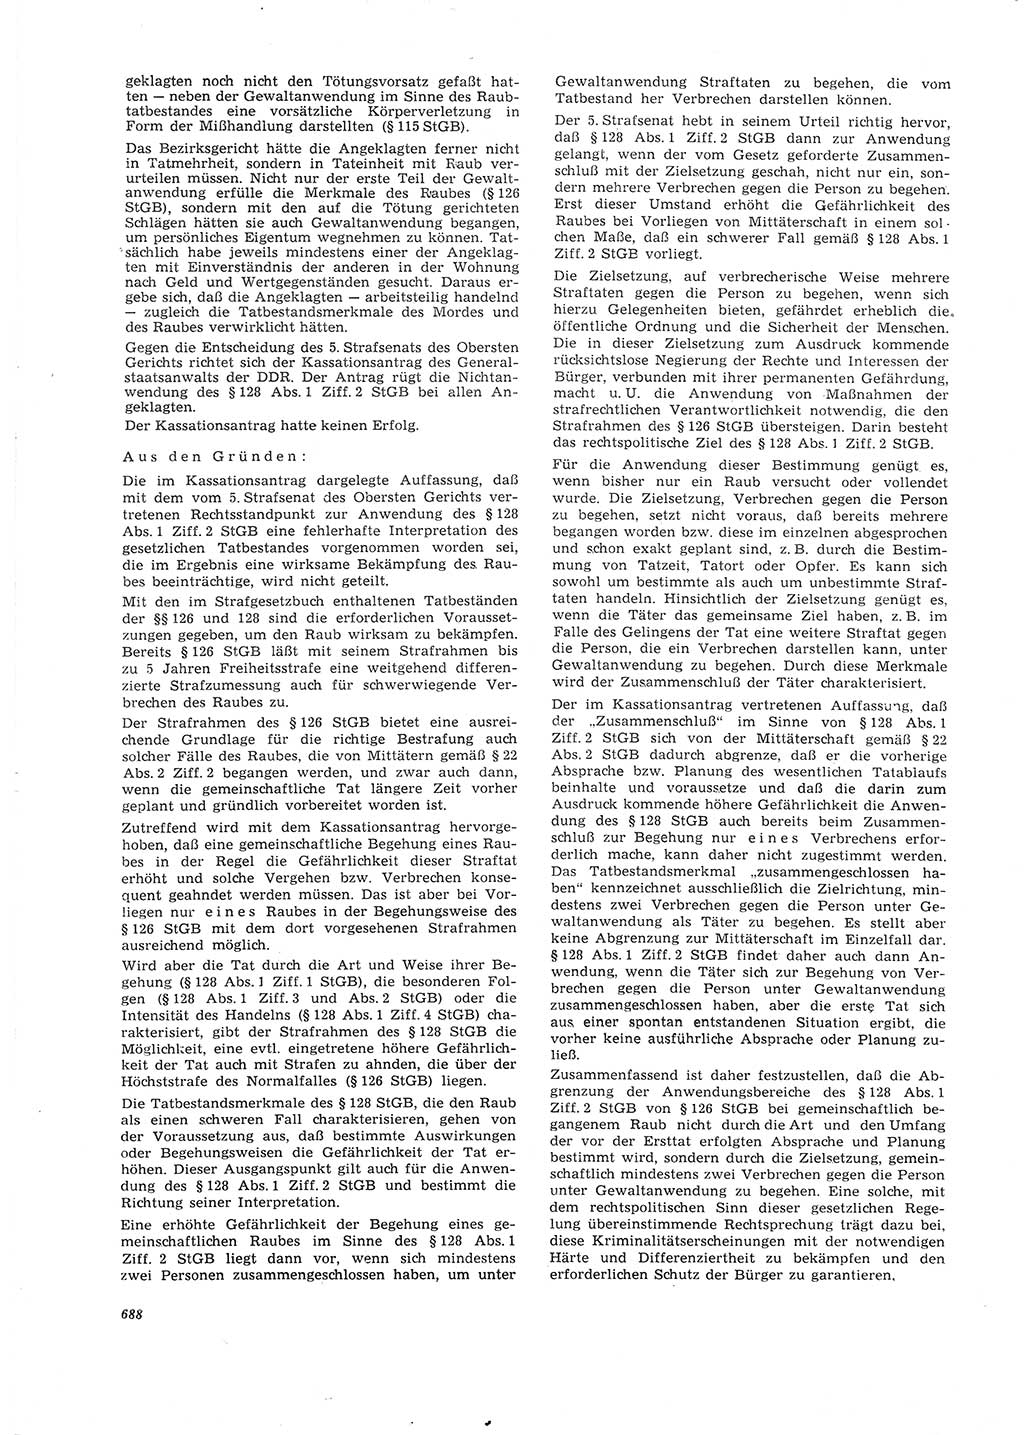 Neue Justiz (NJ), Zeitschrift für Recht und Rechtswissenschaft [Deutsche Demokratische Republik (DDR)], 26. Jahrgang 1972, Seite 688 (NJ DDR 1972, S. 688)